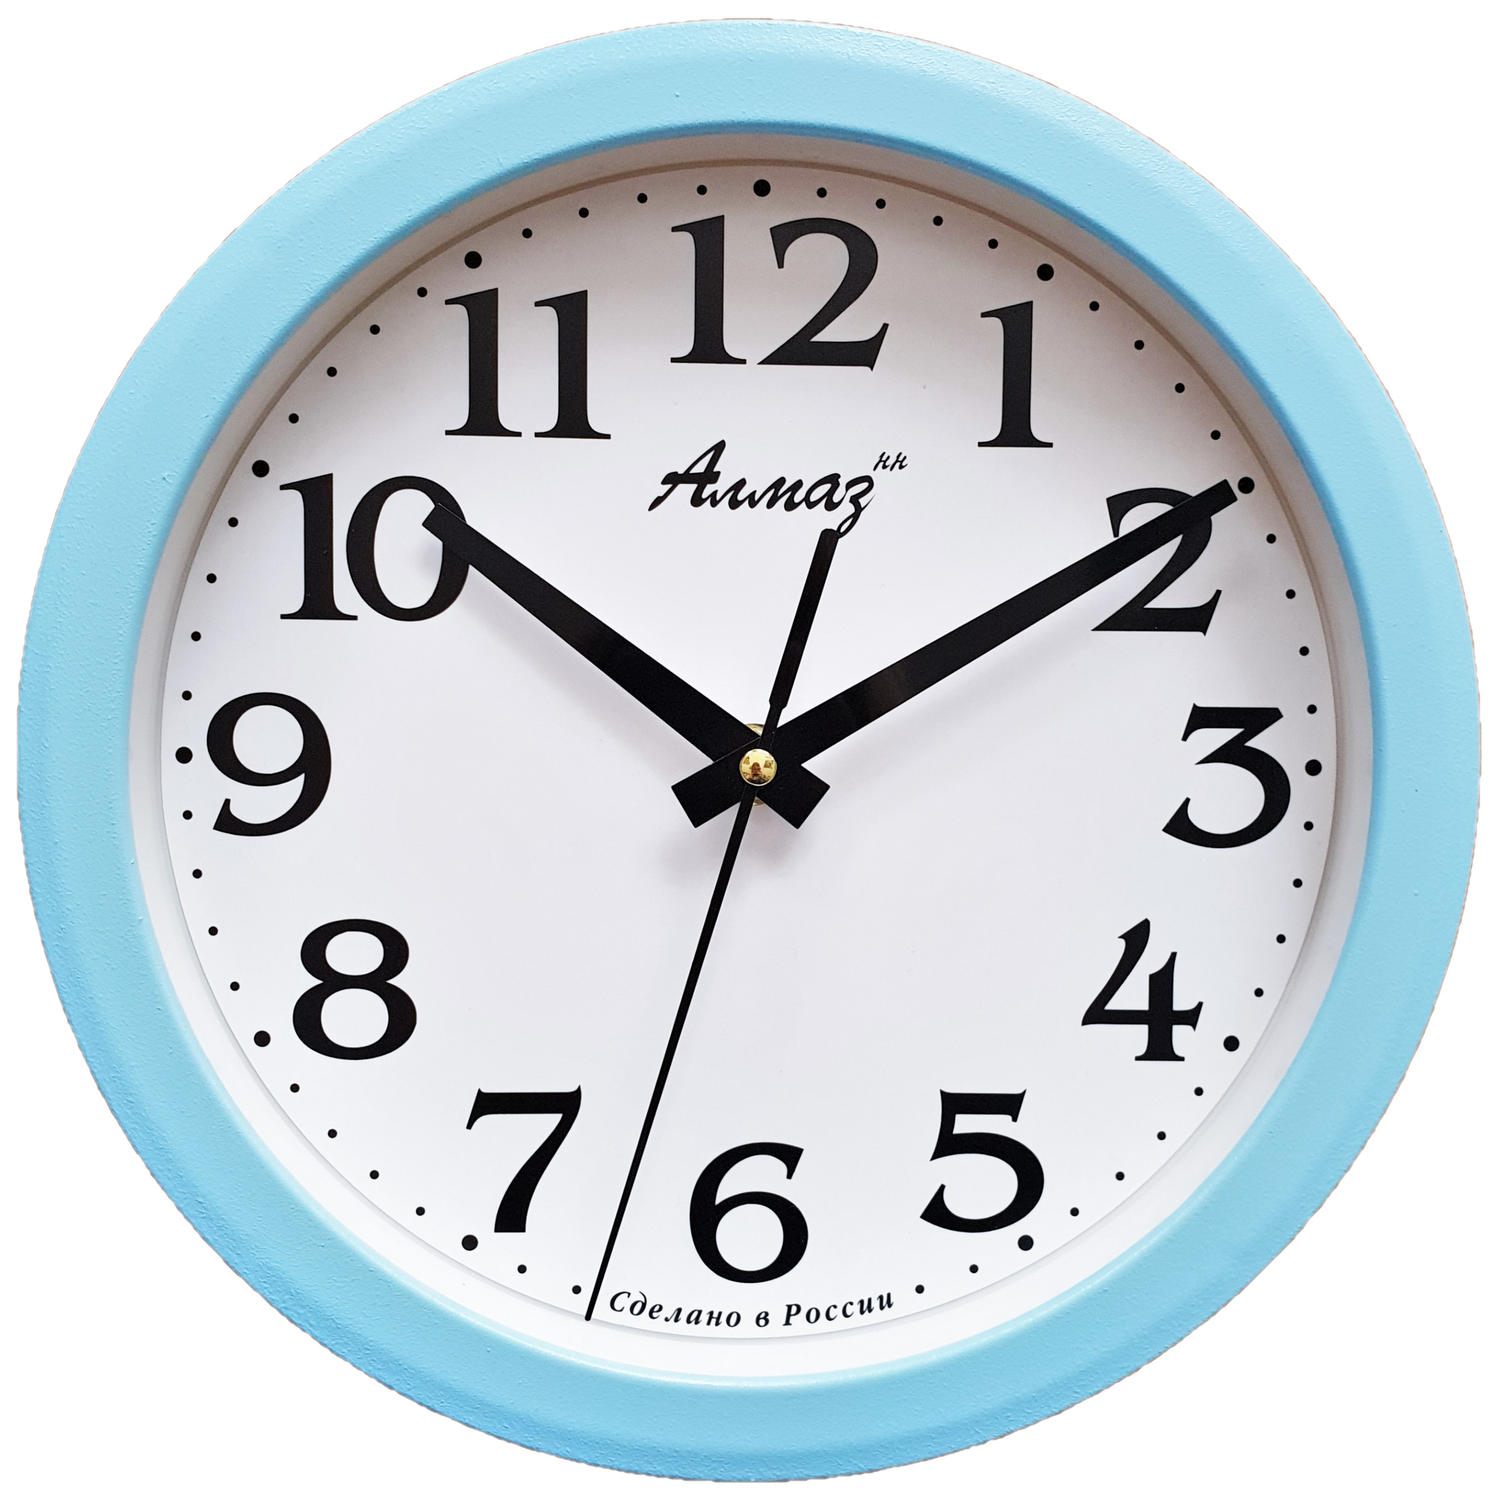 Часы АлмазНН настенные круглые голубые 22.5 см - фото 1